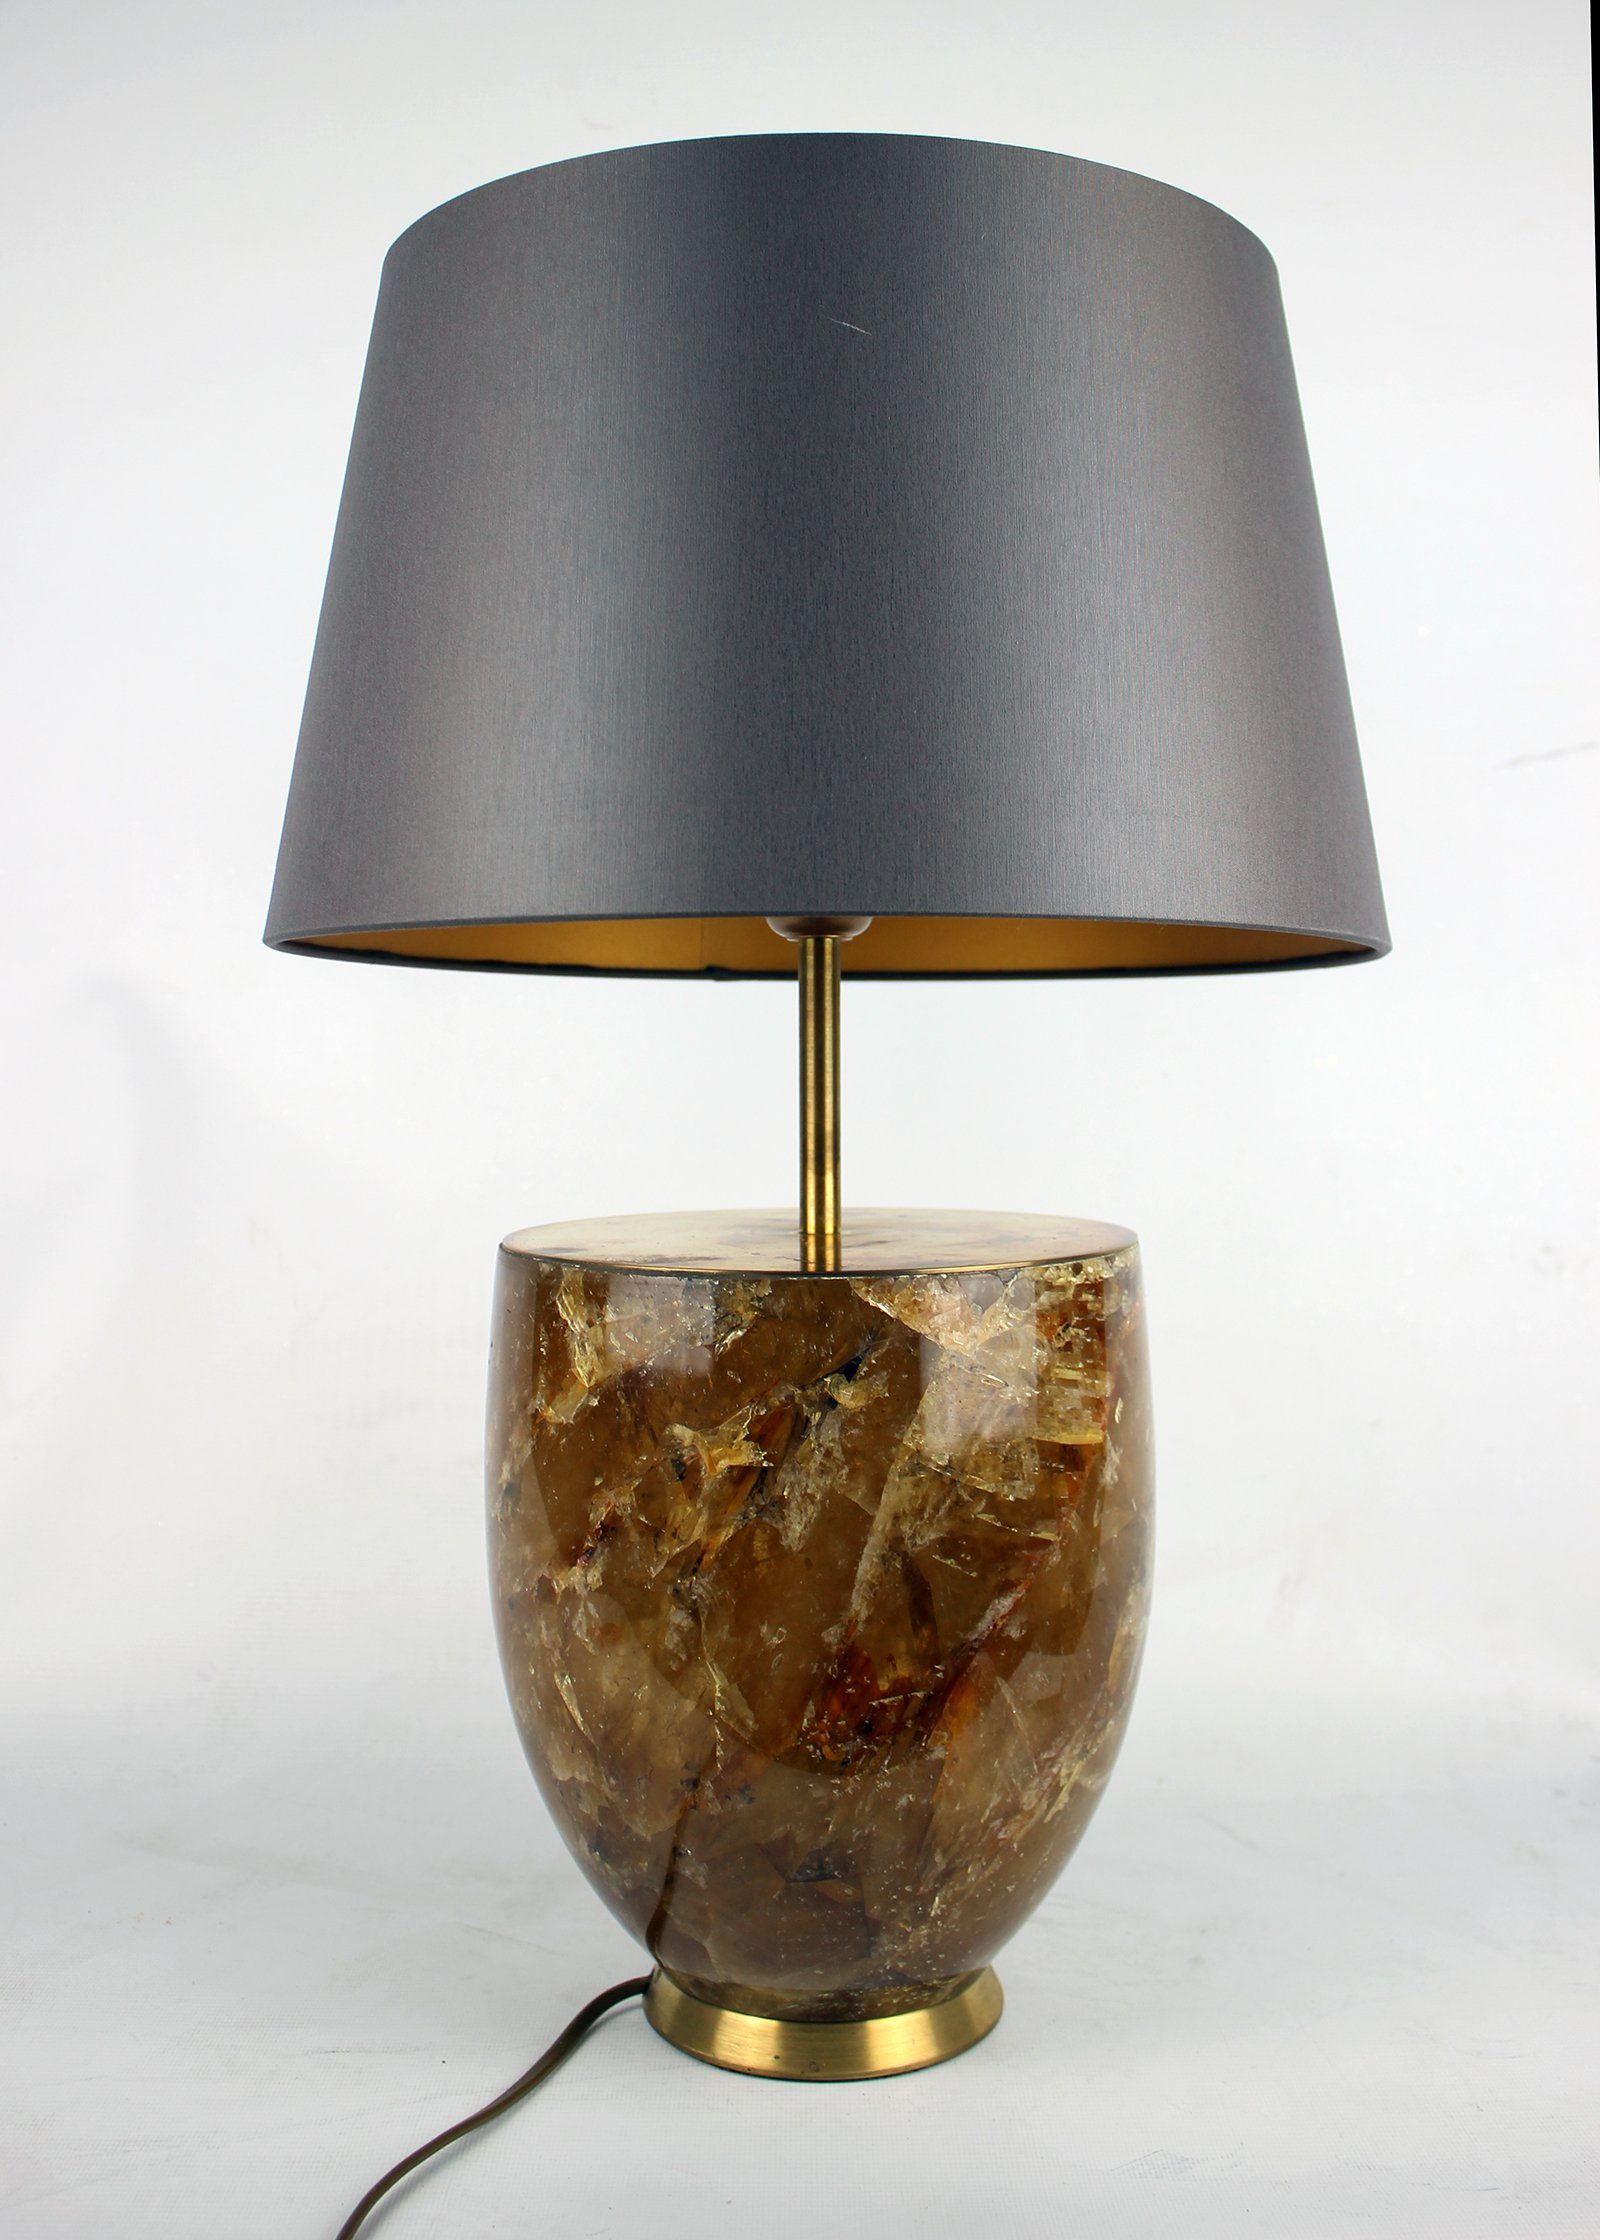 Signature Home Collection Tischleuchte Tischlampe Kristallnaturstein mit Lampenschirm klassisch, ohne Leuchtmittel, warmweiß, handgefertigt aus echtem Kristall Naturstein